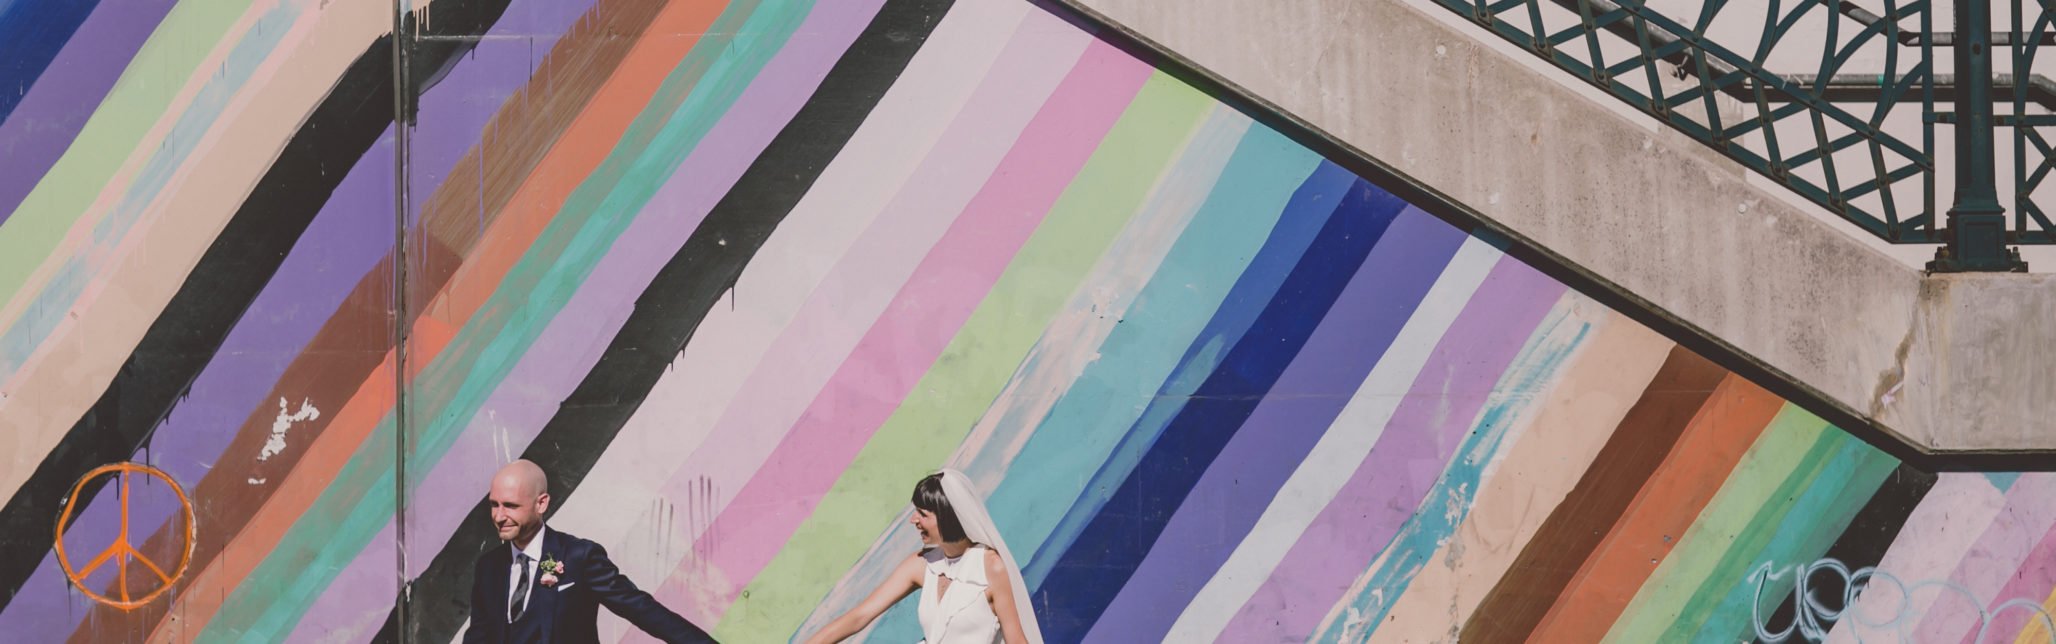 groom leads bride down sidewalk in front of graffiti wall in Roncesvalles.